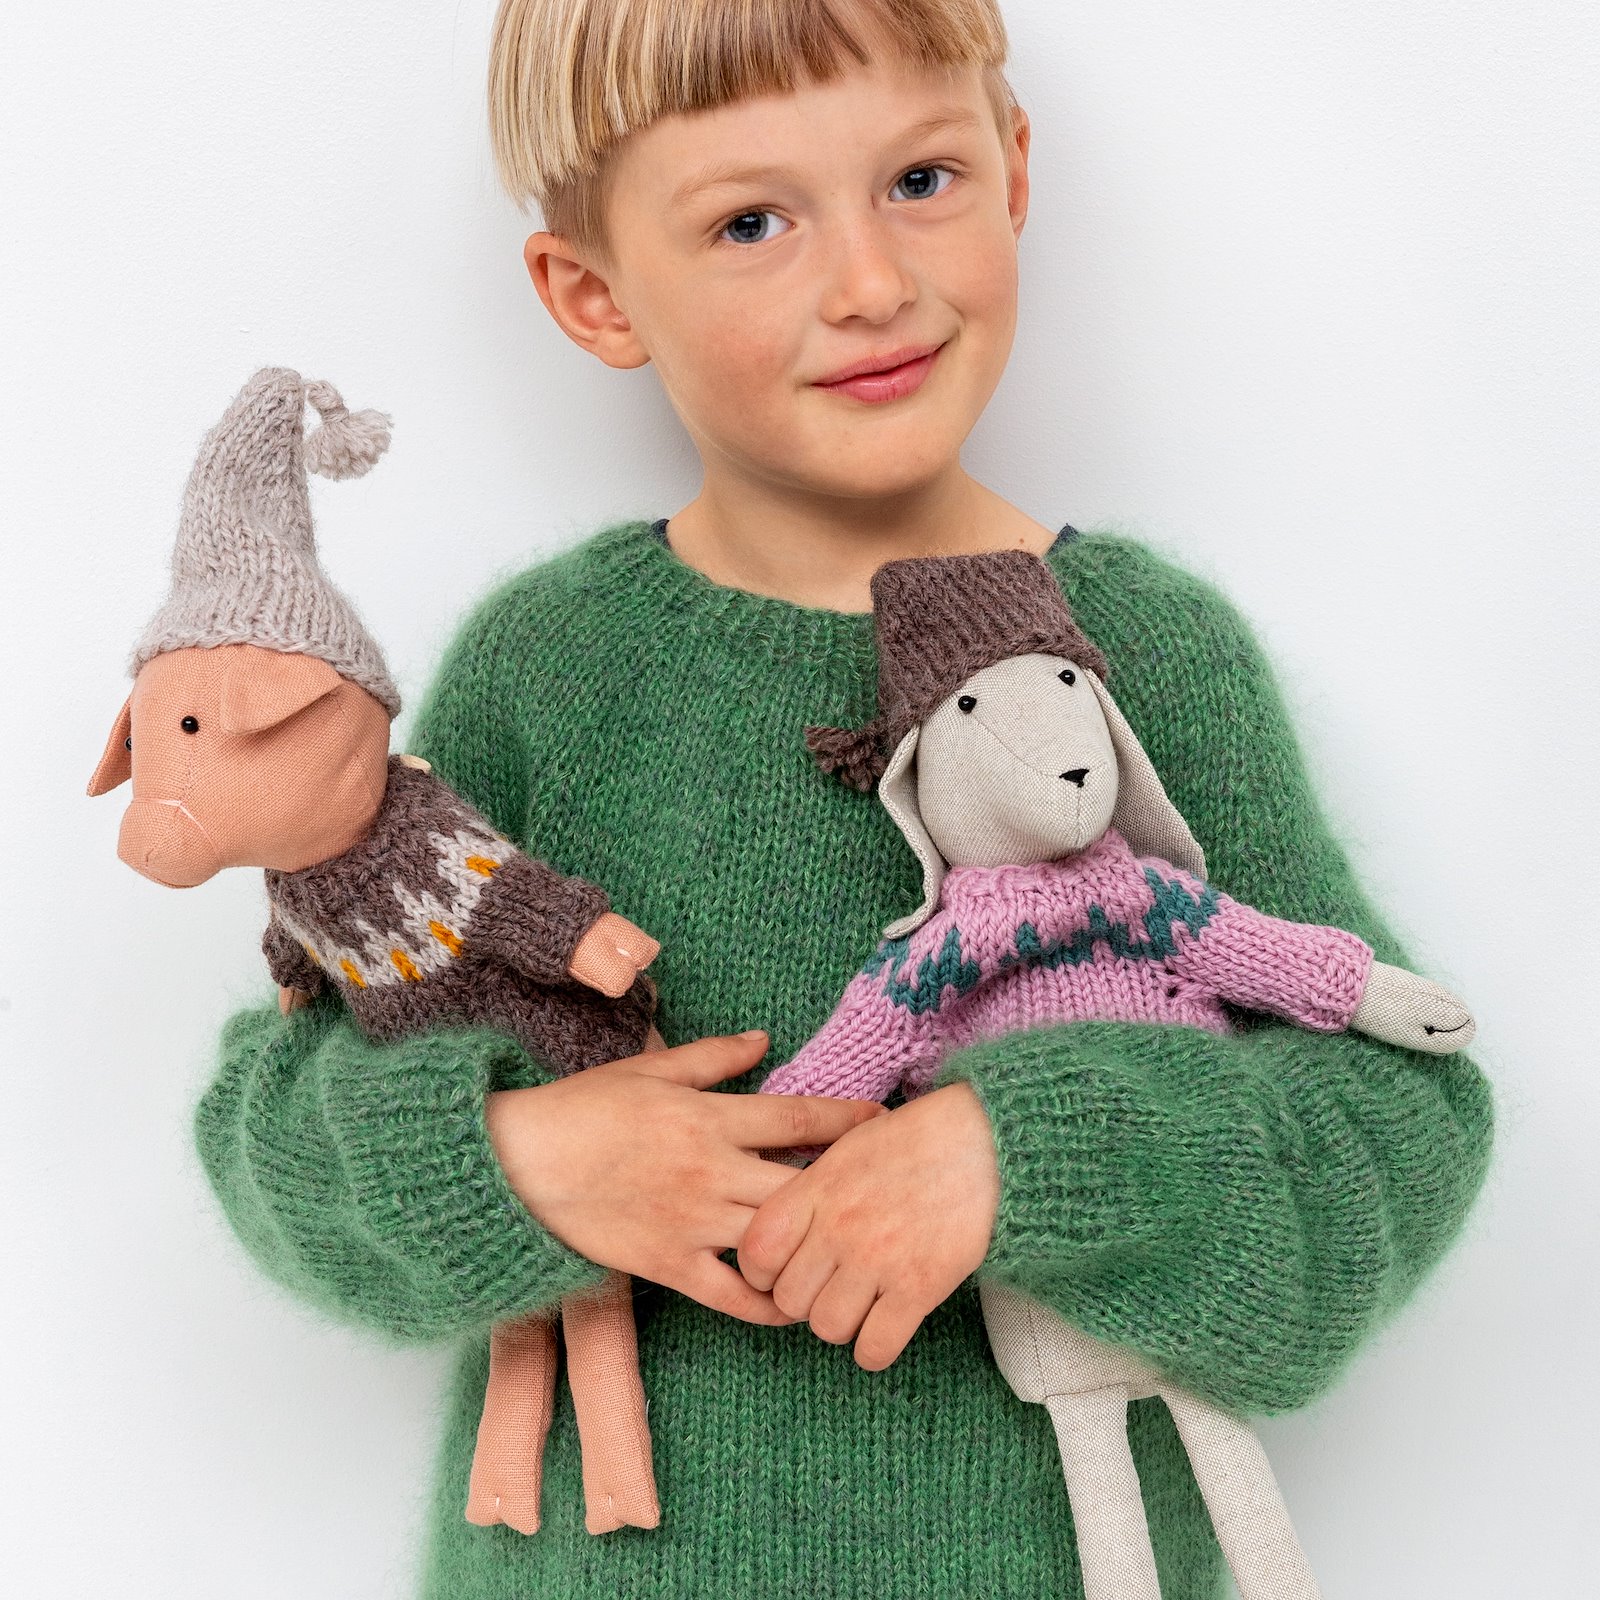 FRAYA knitting pattern - Woofy Sweater, cuddly toys p90350_410132_FRAYA7028_90063135_90063137_90063138_bundle